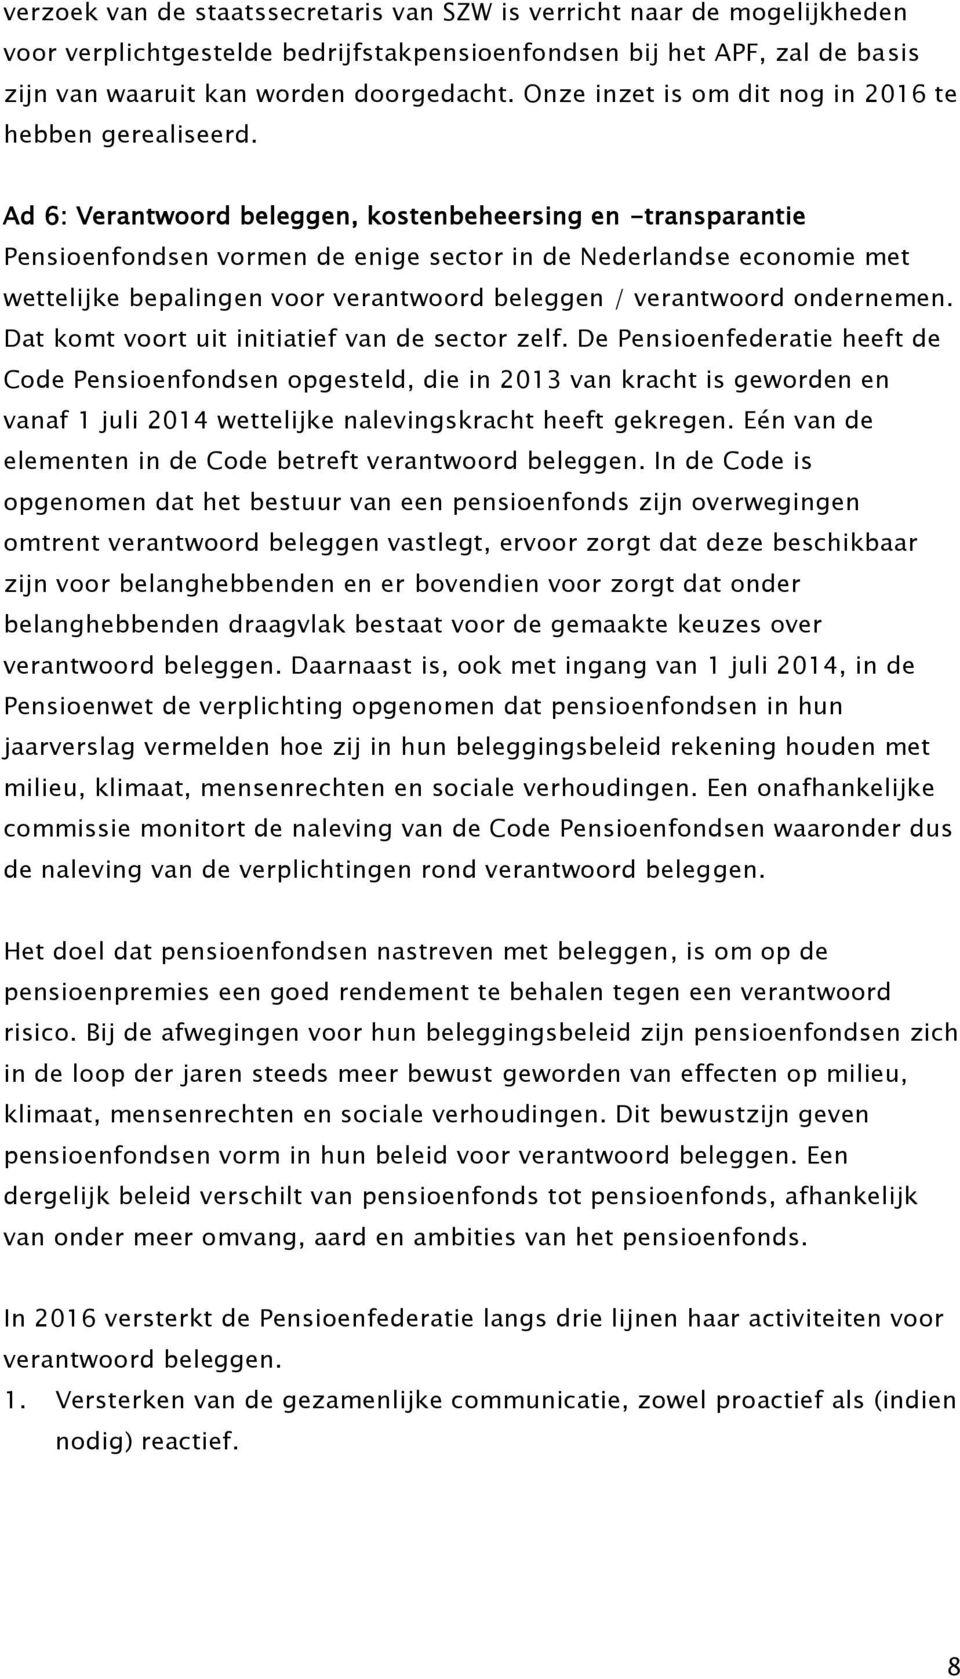 Ad 6: Verantwoord beleggen, kostenbeheersing en -transparantie Pensioenfondsen vormen de enige sector in de Nederlandse economie met wettelijke bepalingen voor verantwoord beleggen / verantwoord